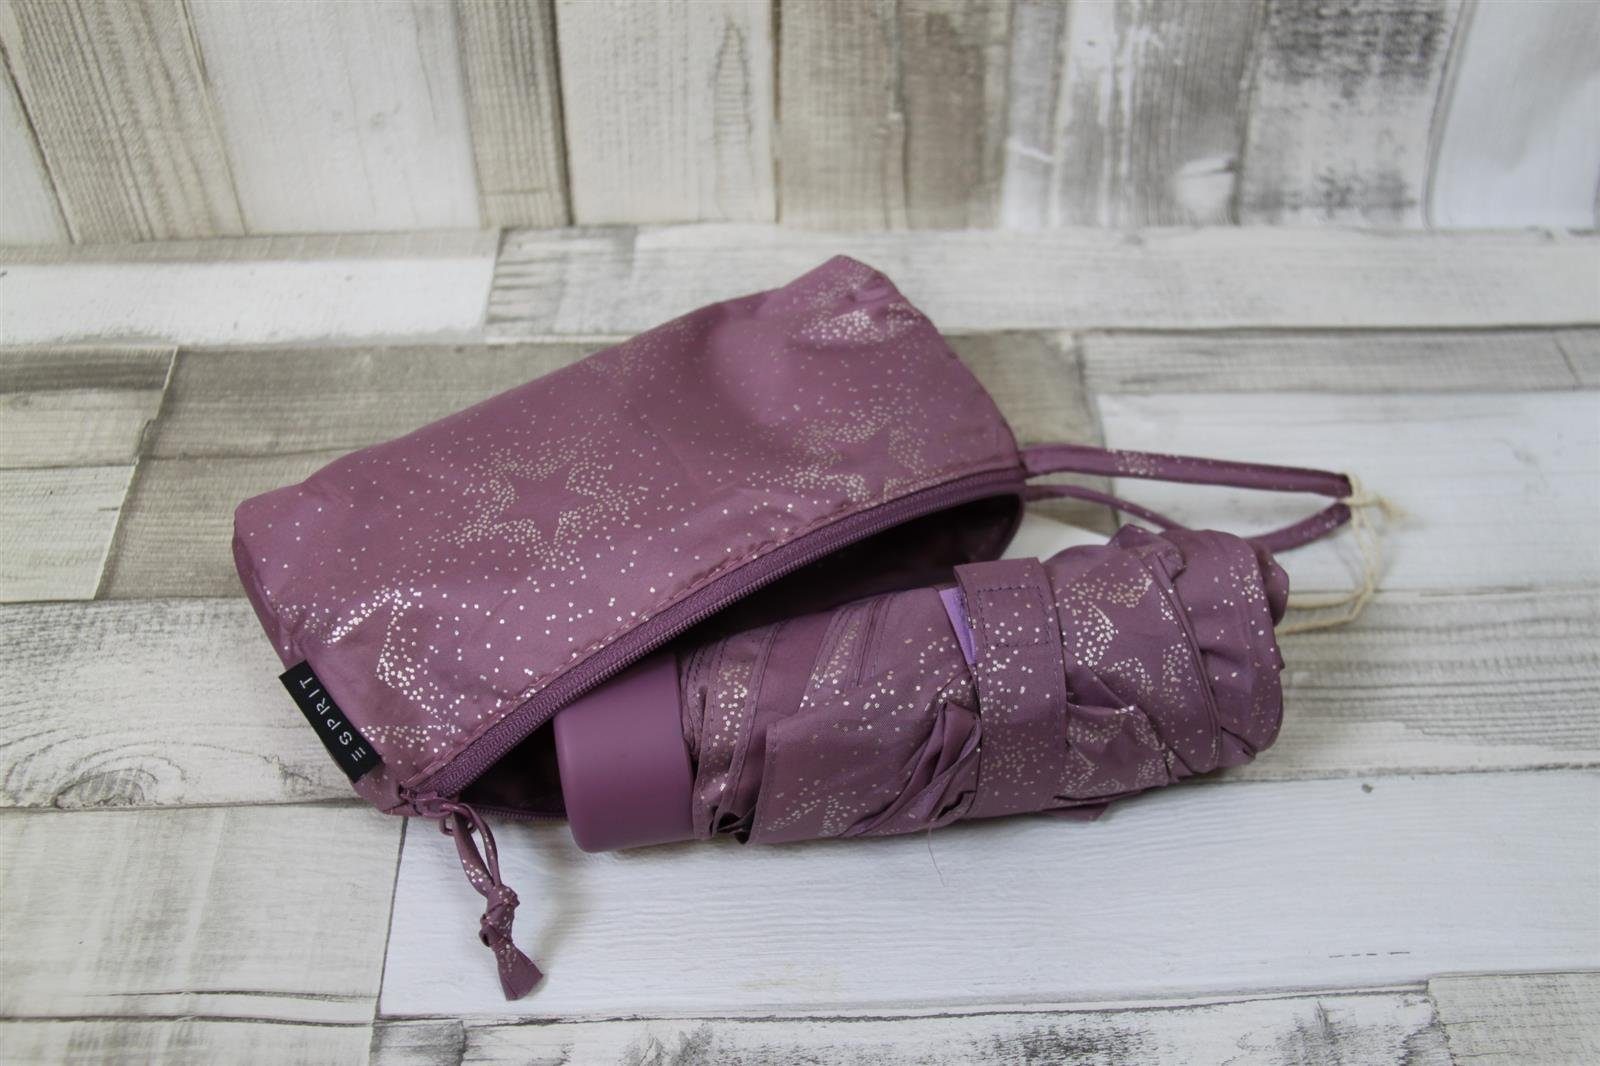 Glitzersternchen in ESPRIT lila Tasche einer Taschenregenschirm Esprit Taschenschirm